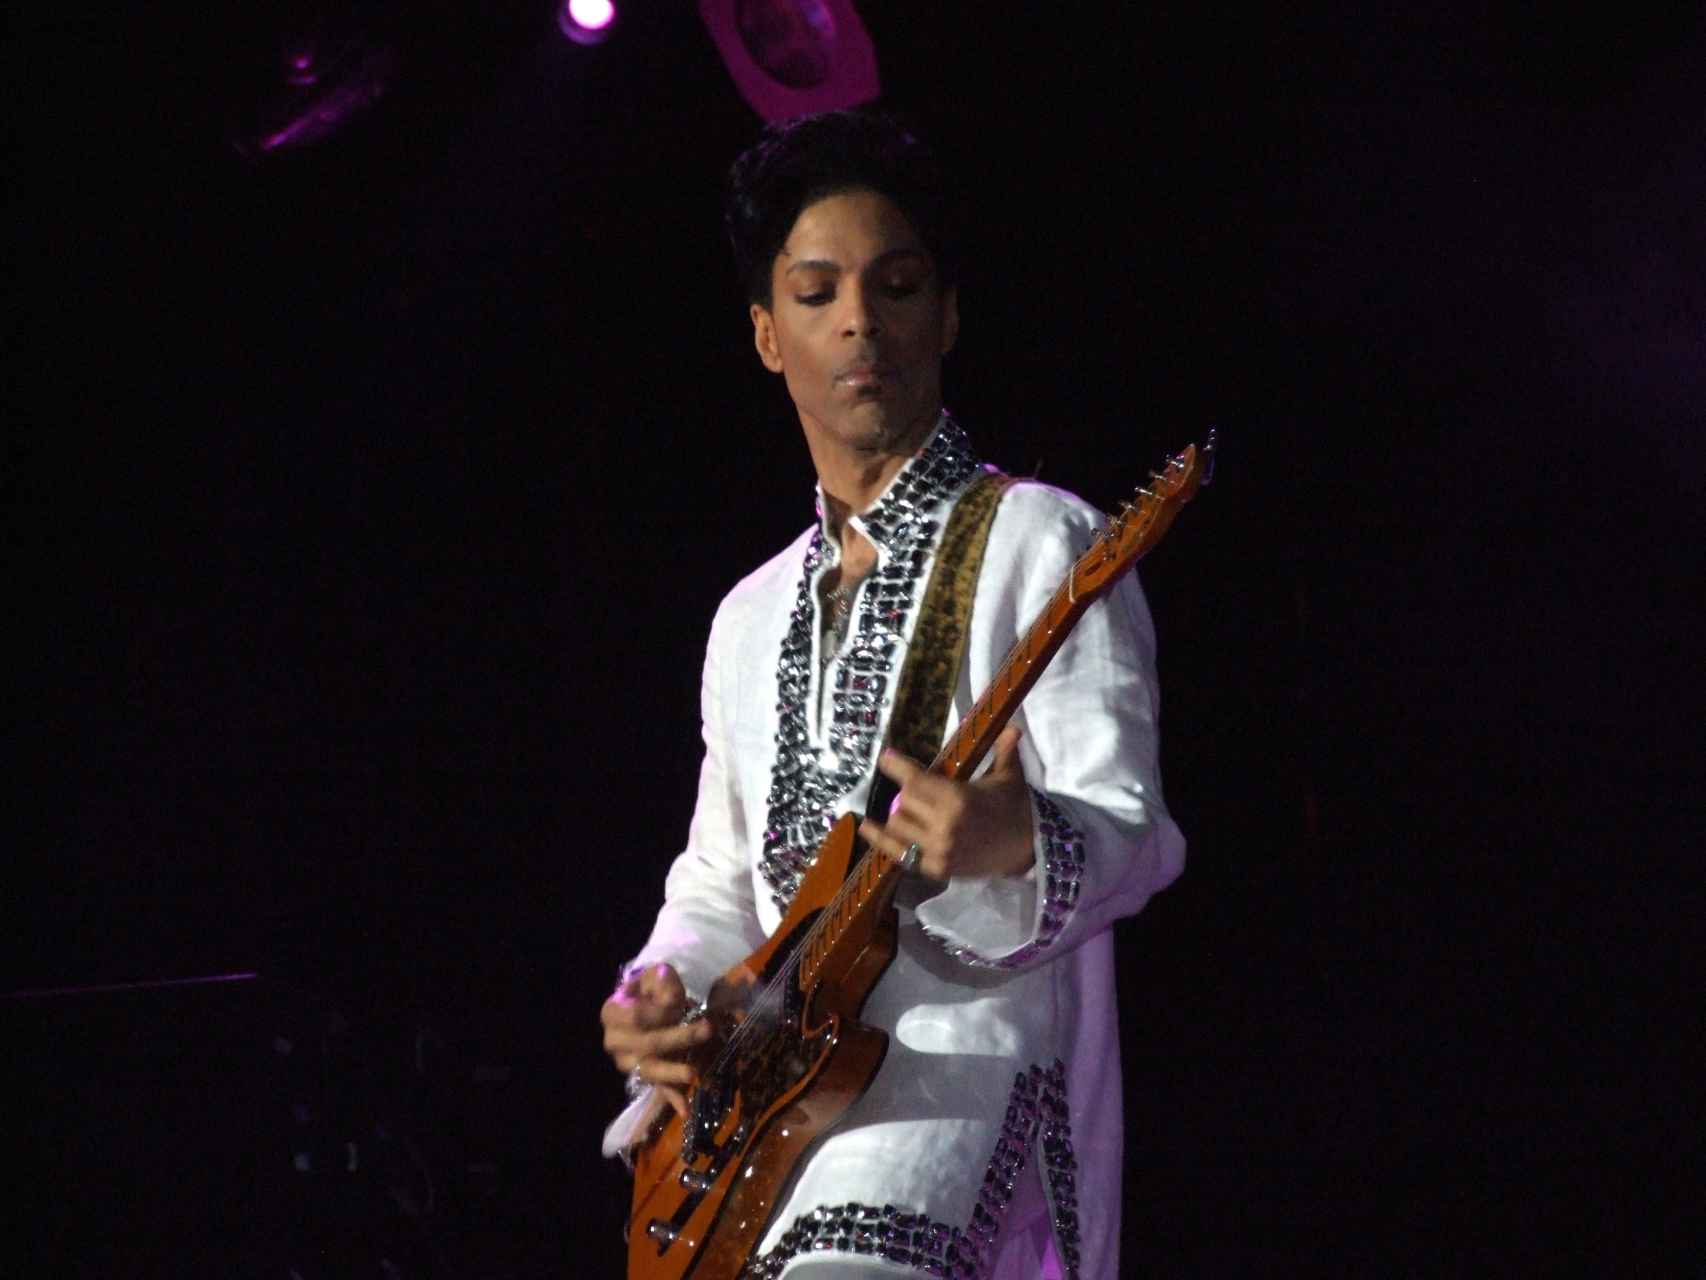 Prince-concierto-Coachella_118999399_3964105_1706x1280.jpg